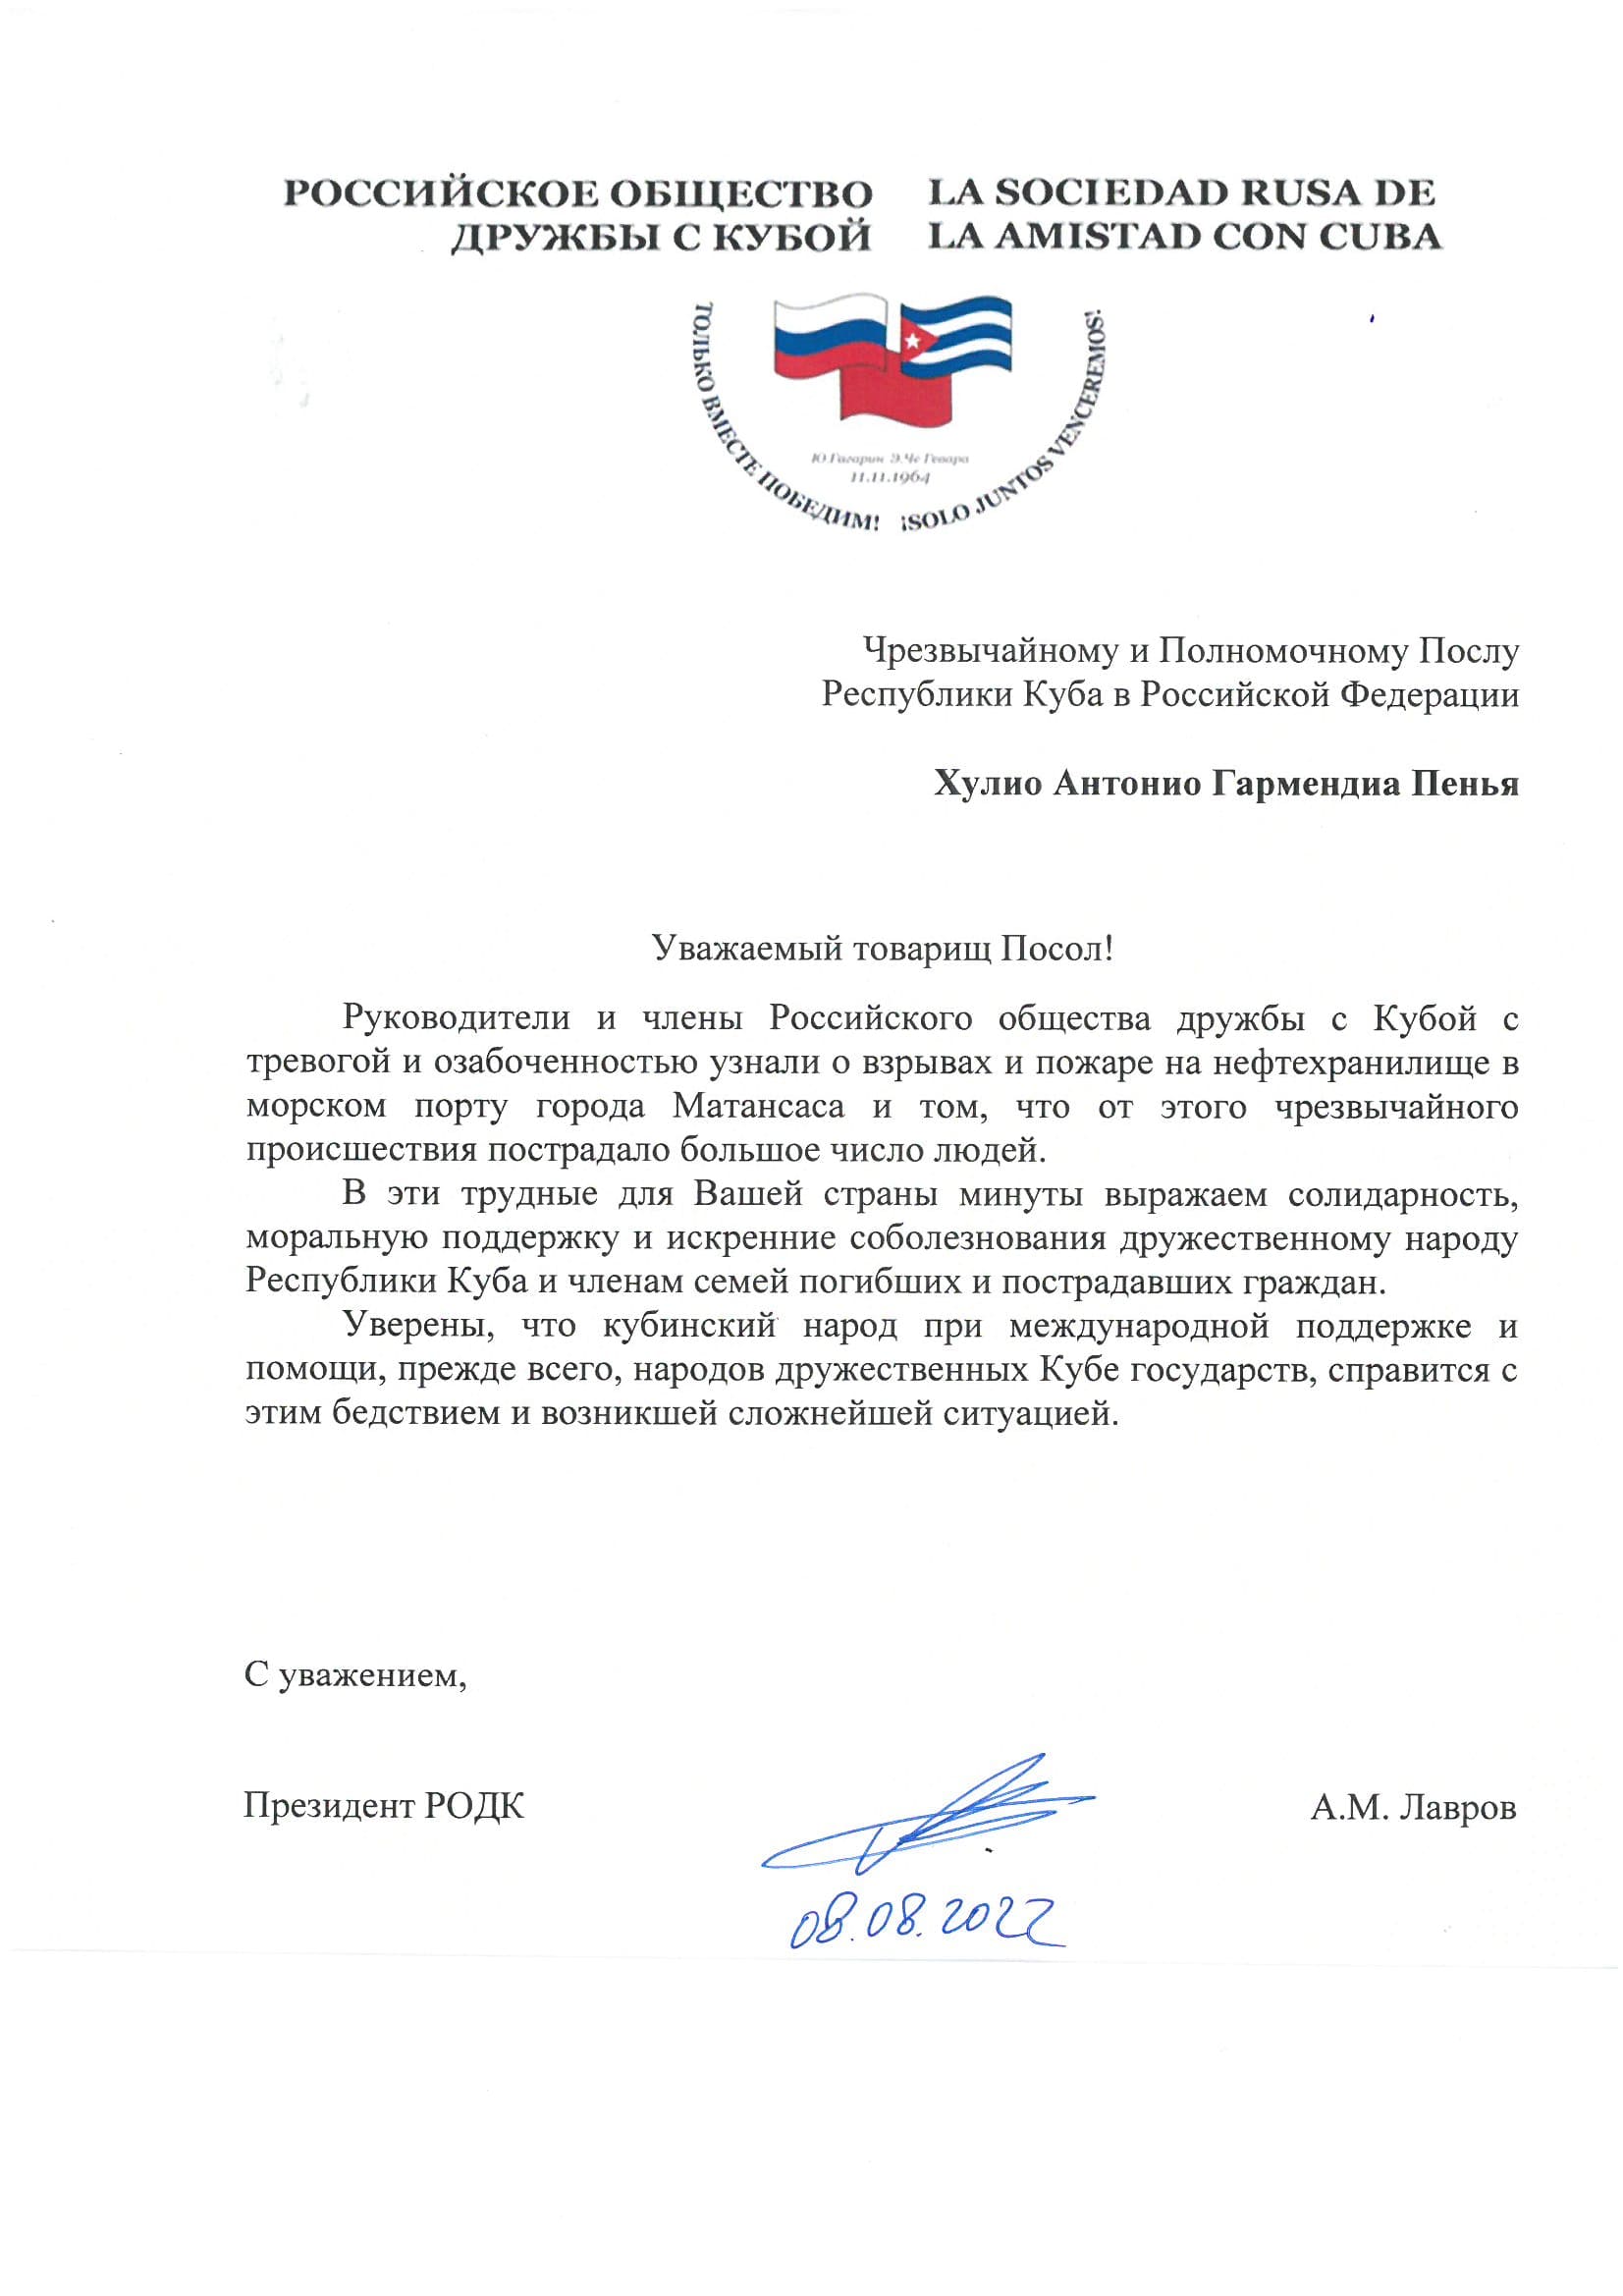 Письмо Чрезвычайному и Полномочному послу Республики Куба в РФ от Президента РОДК